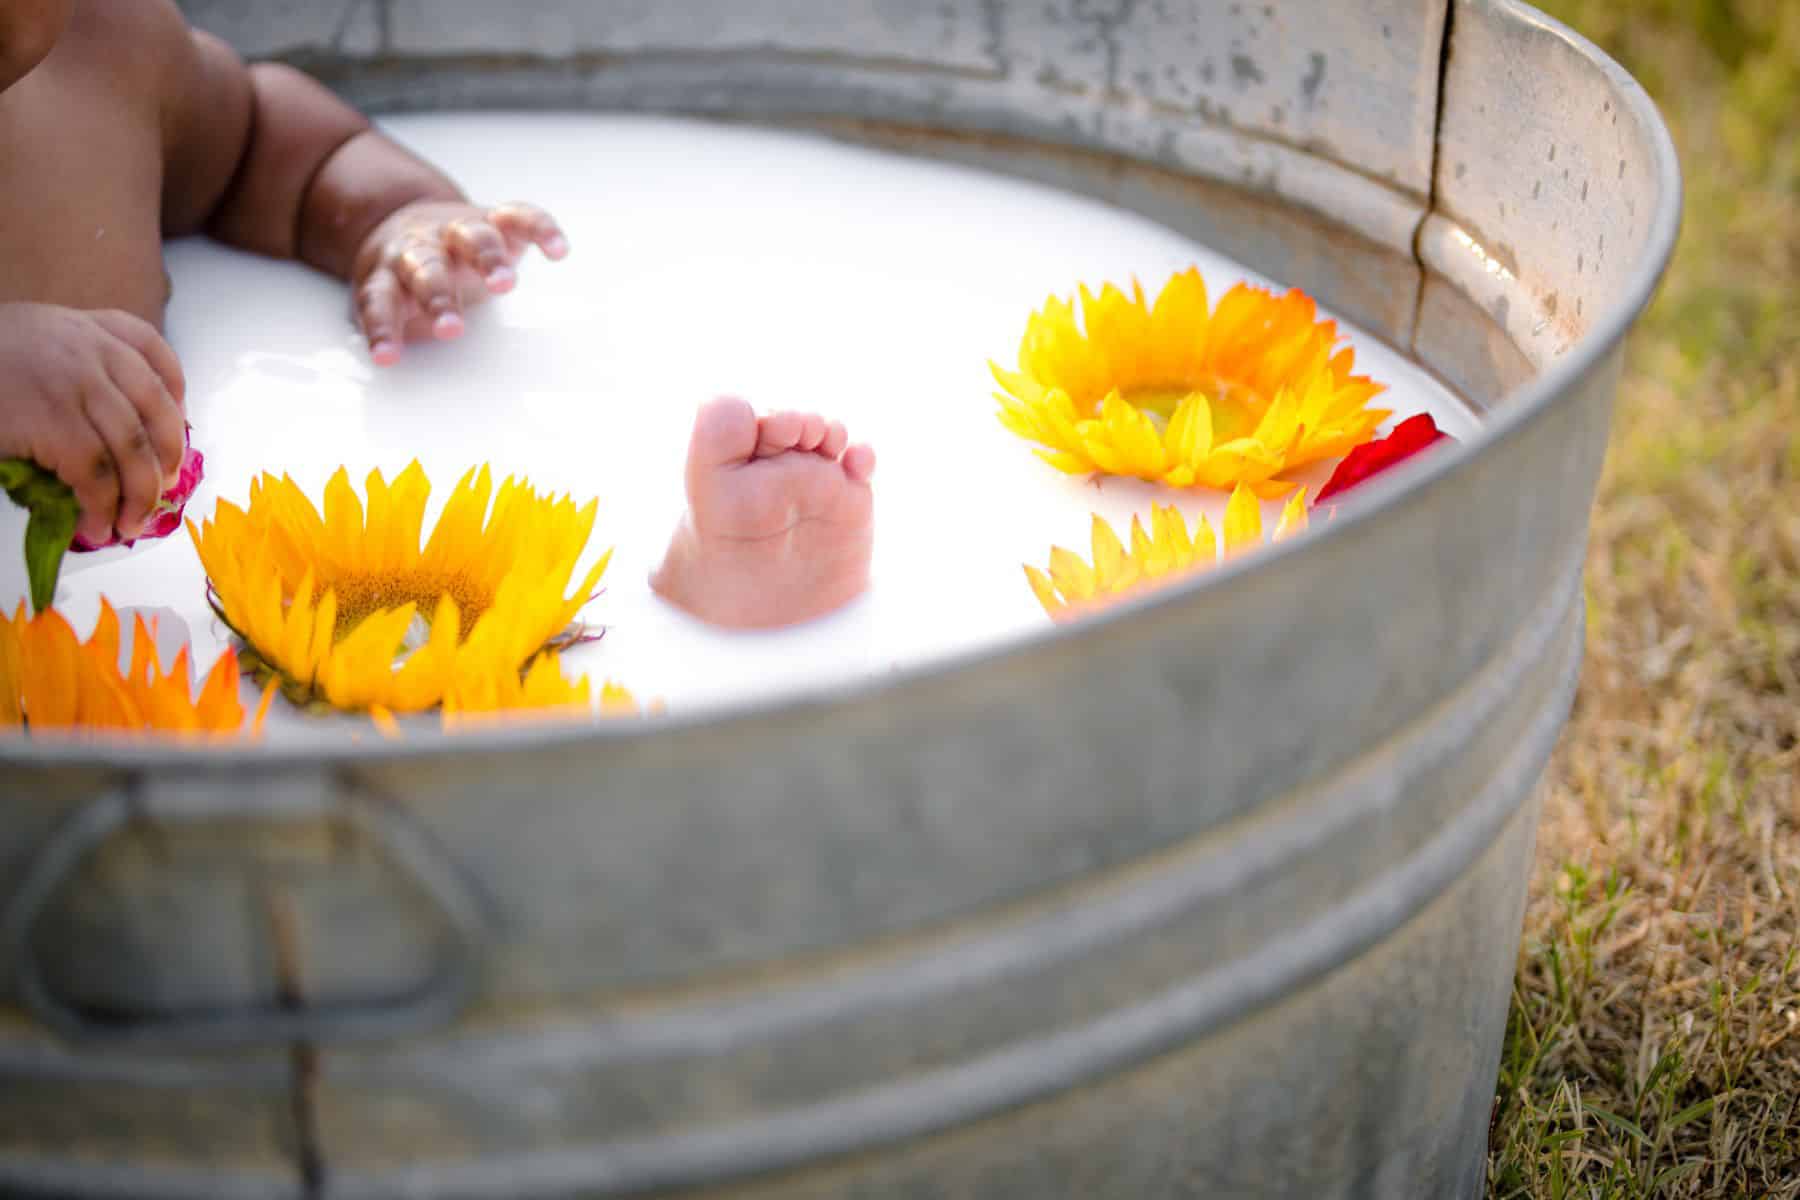 baby feet in milk bath.